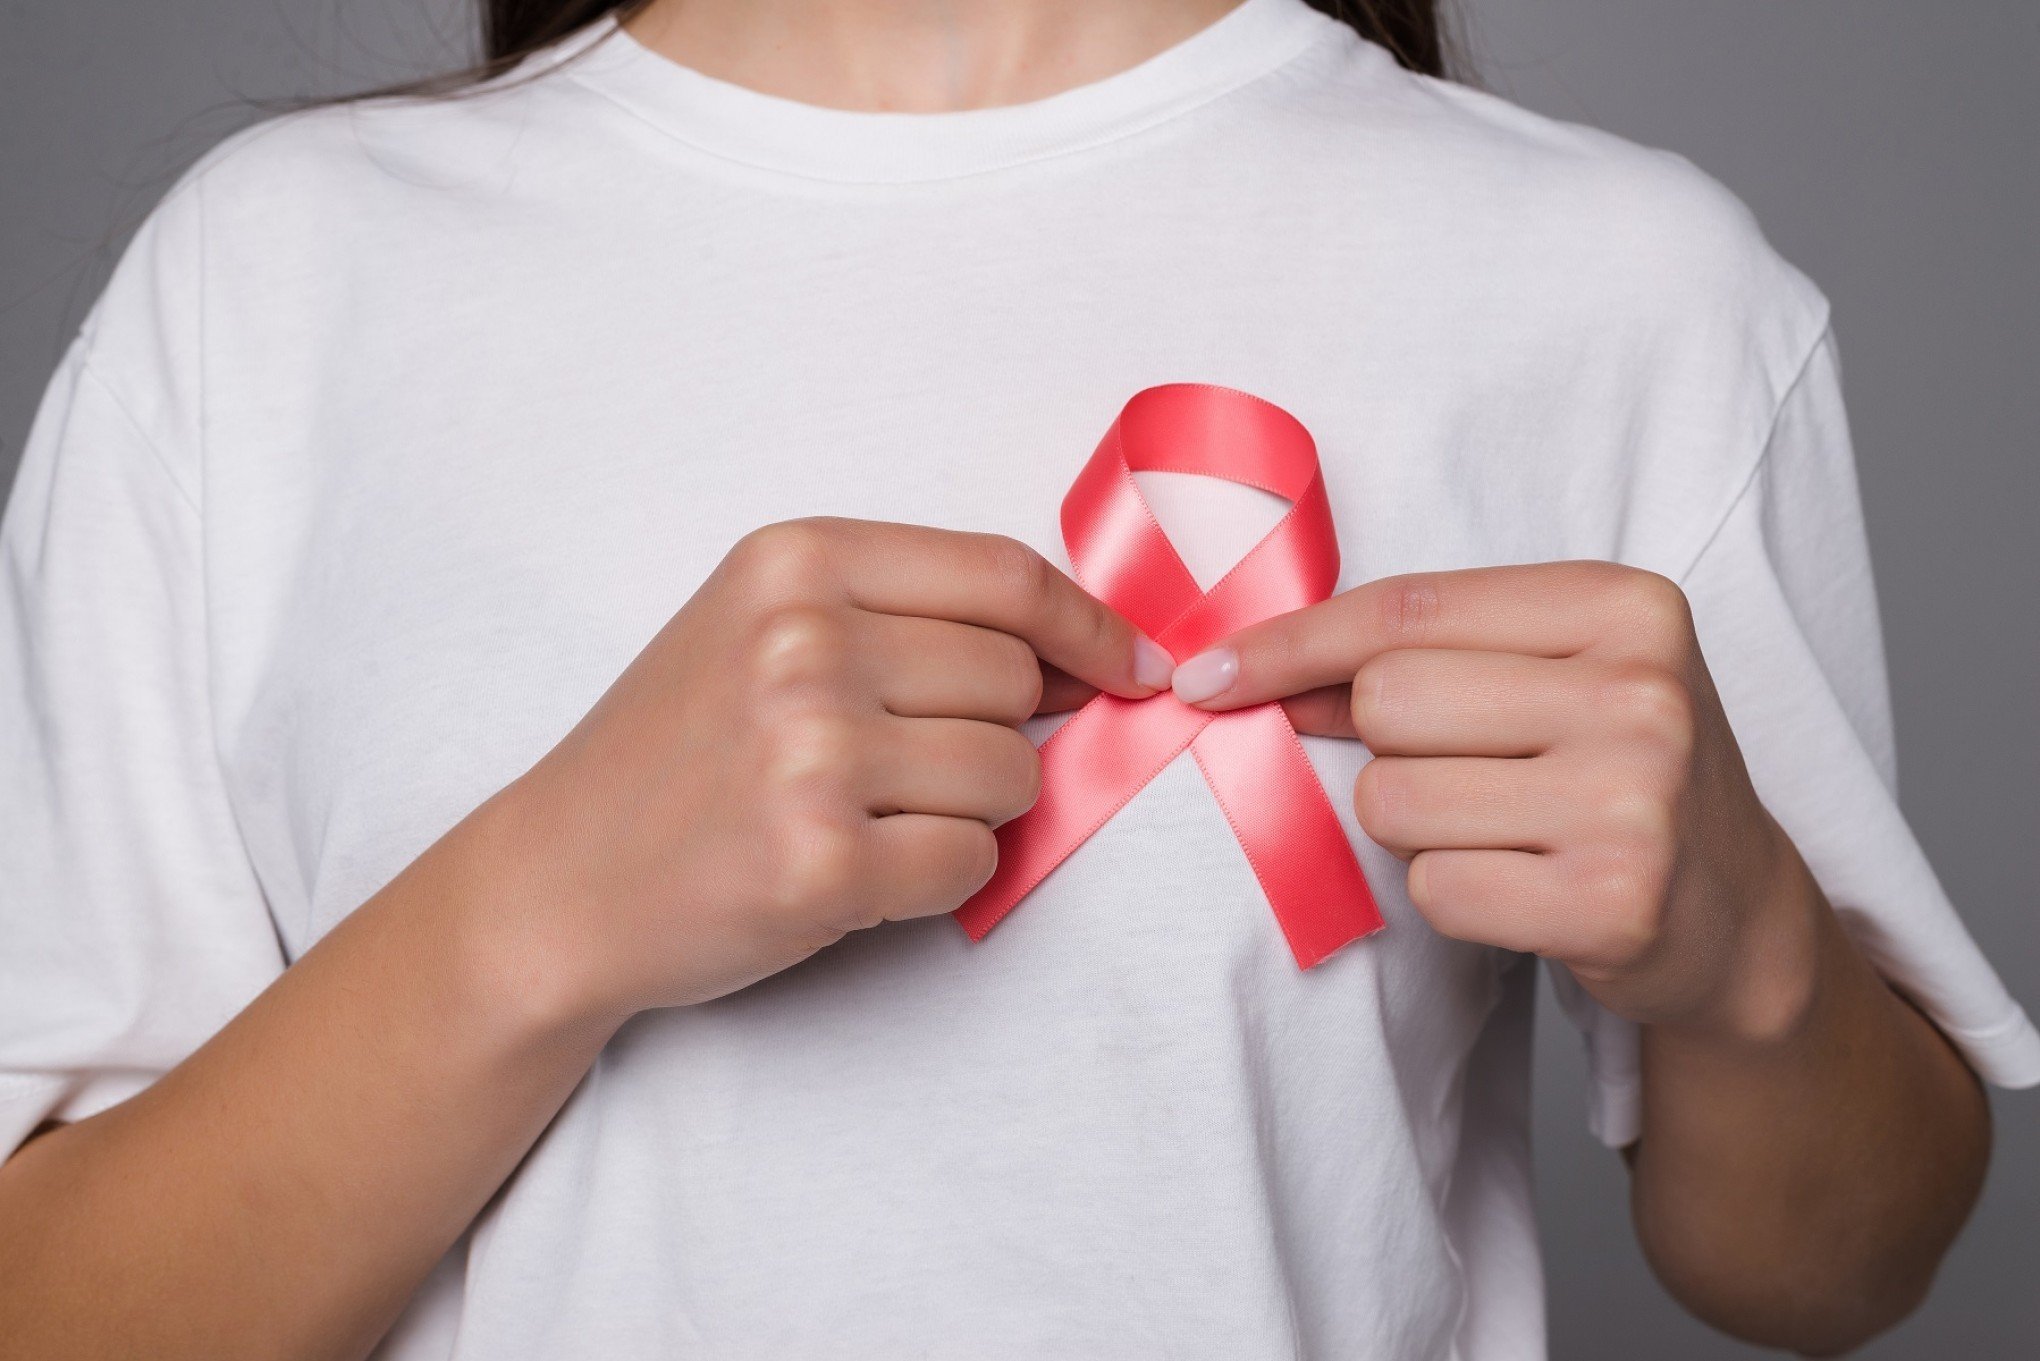 Palestra gratuita abordará a prevenção ao câncer de mama hoje à tarde em São Leopoldo